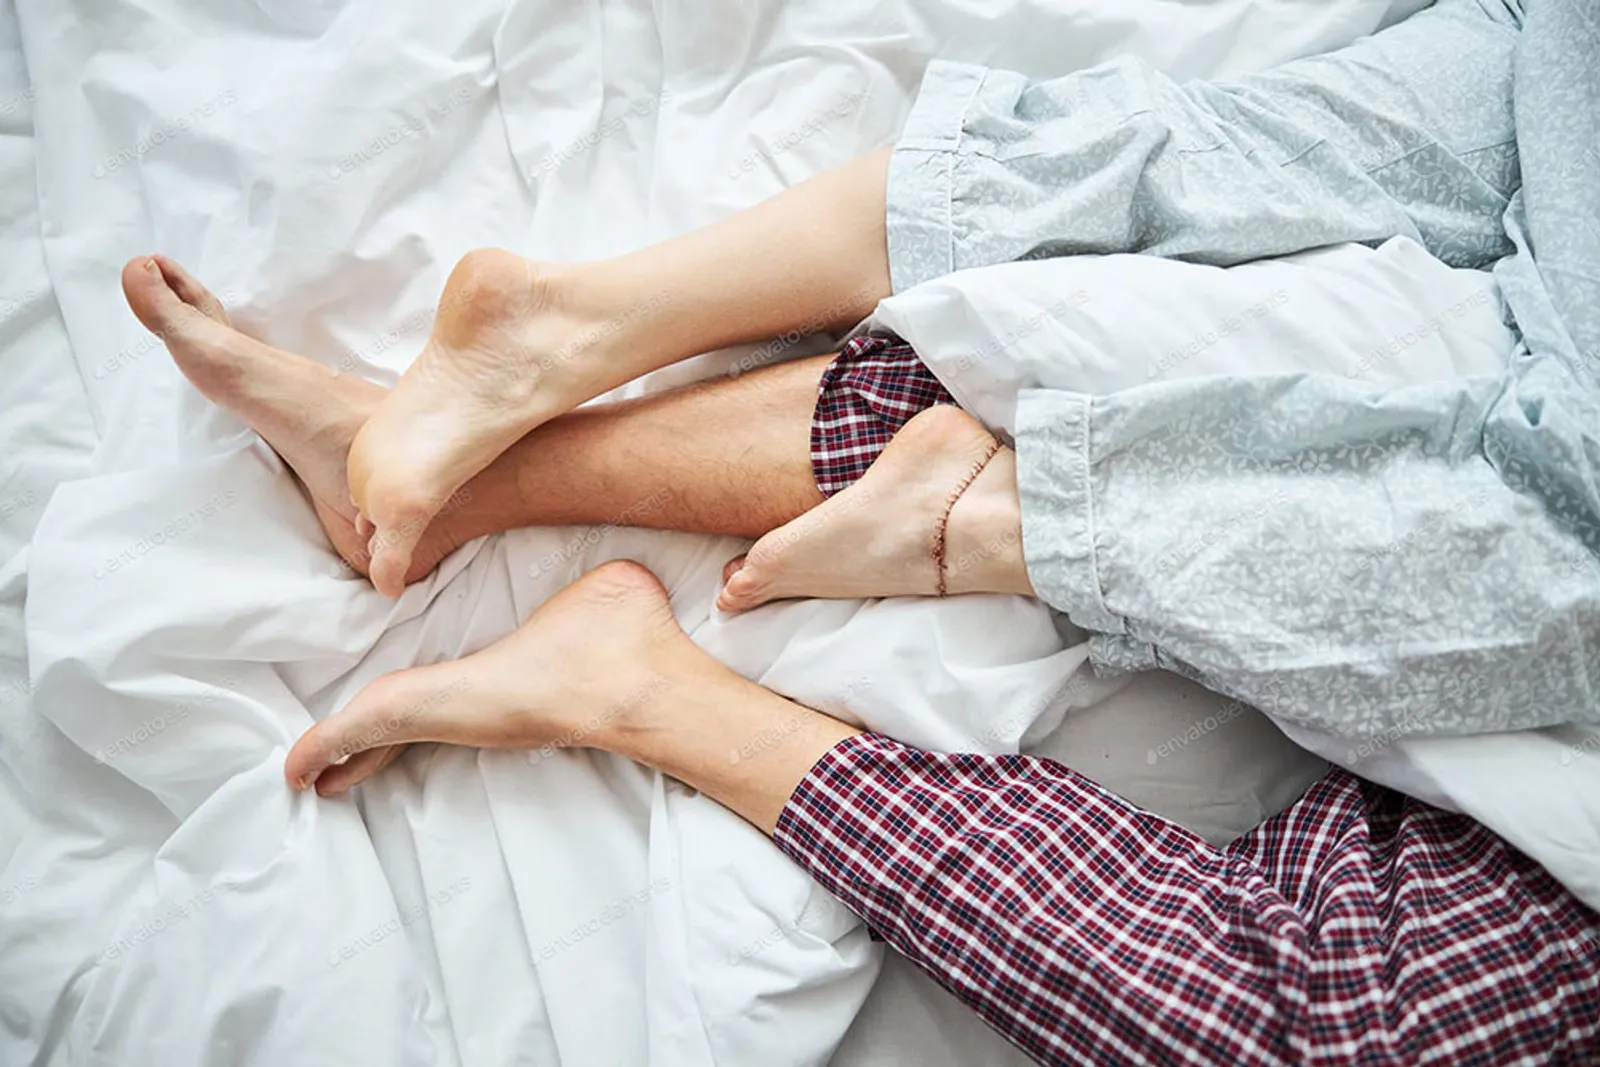 10 Arti Posisi Tidur Kamu dan Pasangan, Menurut Pakar Bahasa Tubuh